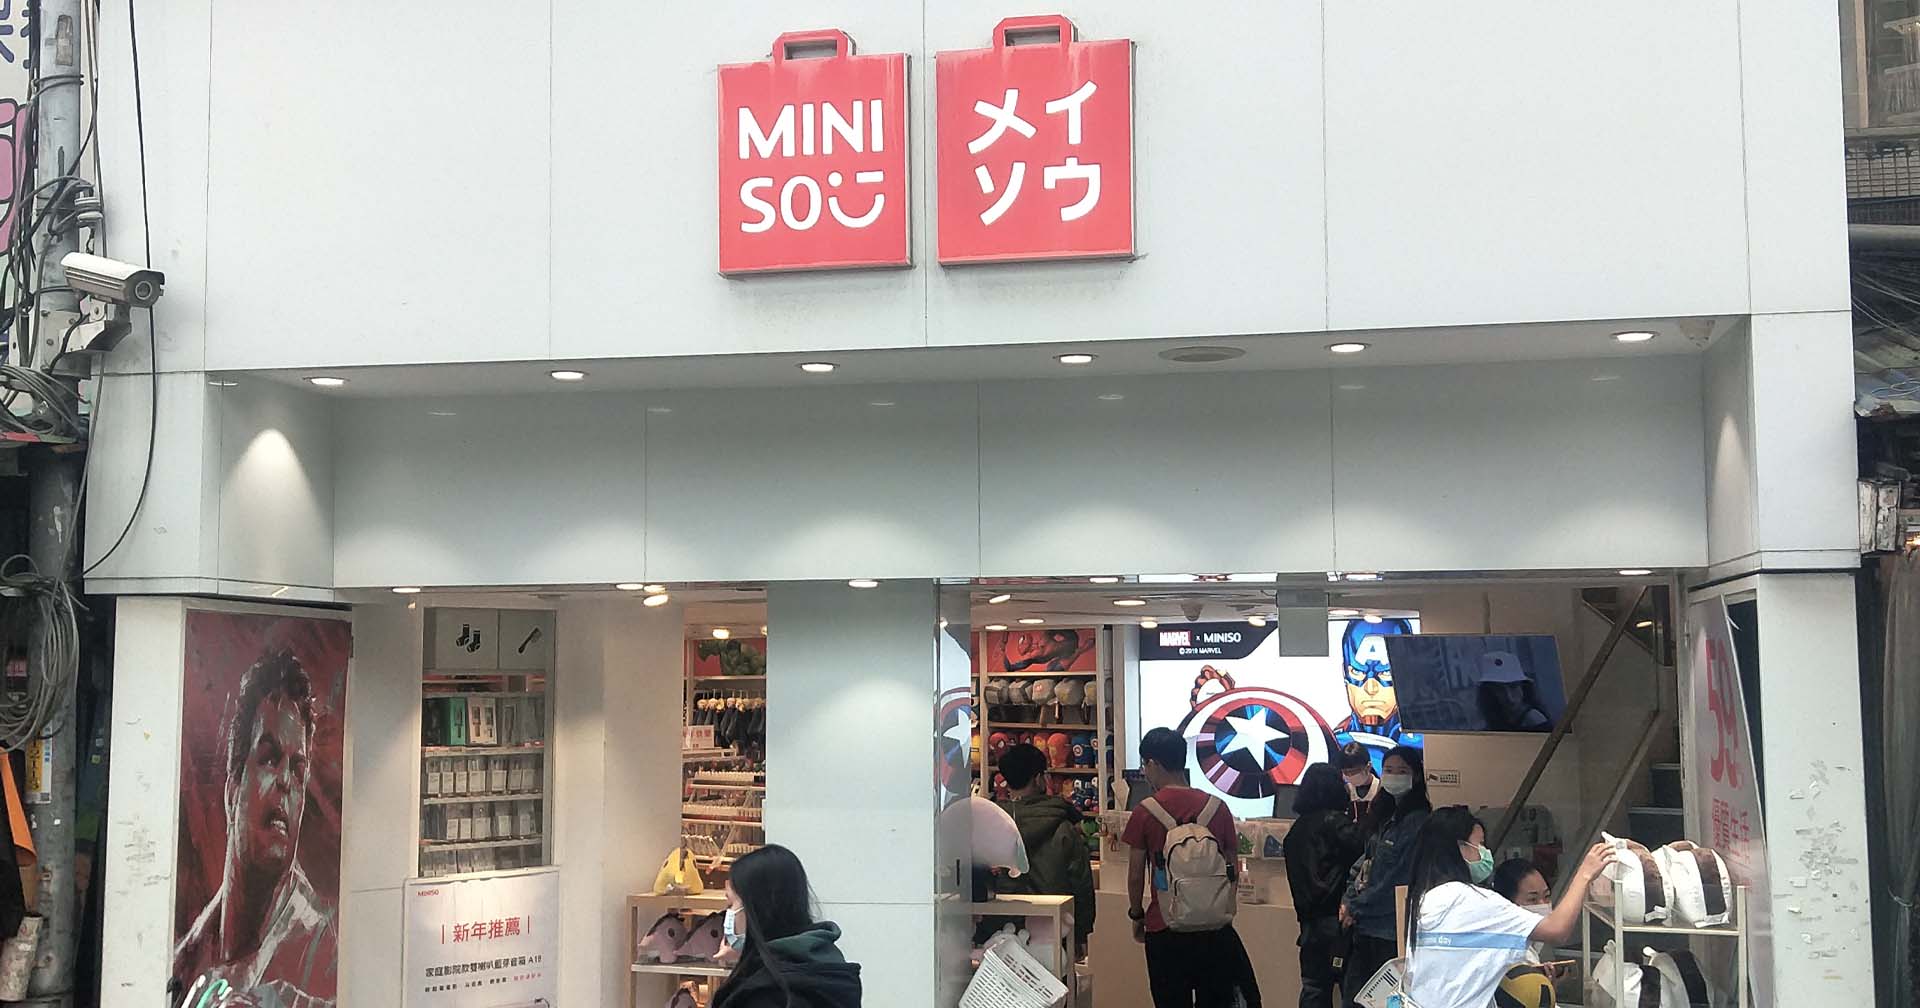 บริษัทจีนเจ้าของ Miniso ออกมาขอโทษ หลังใช้กลยุทธ์แบรนด์สไตล์ญี่ปุ่น